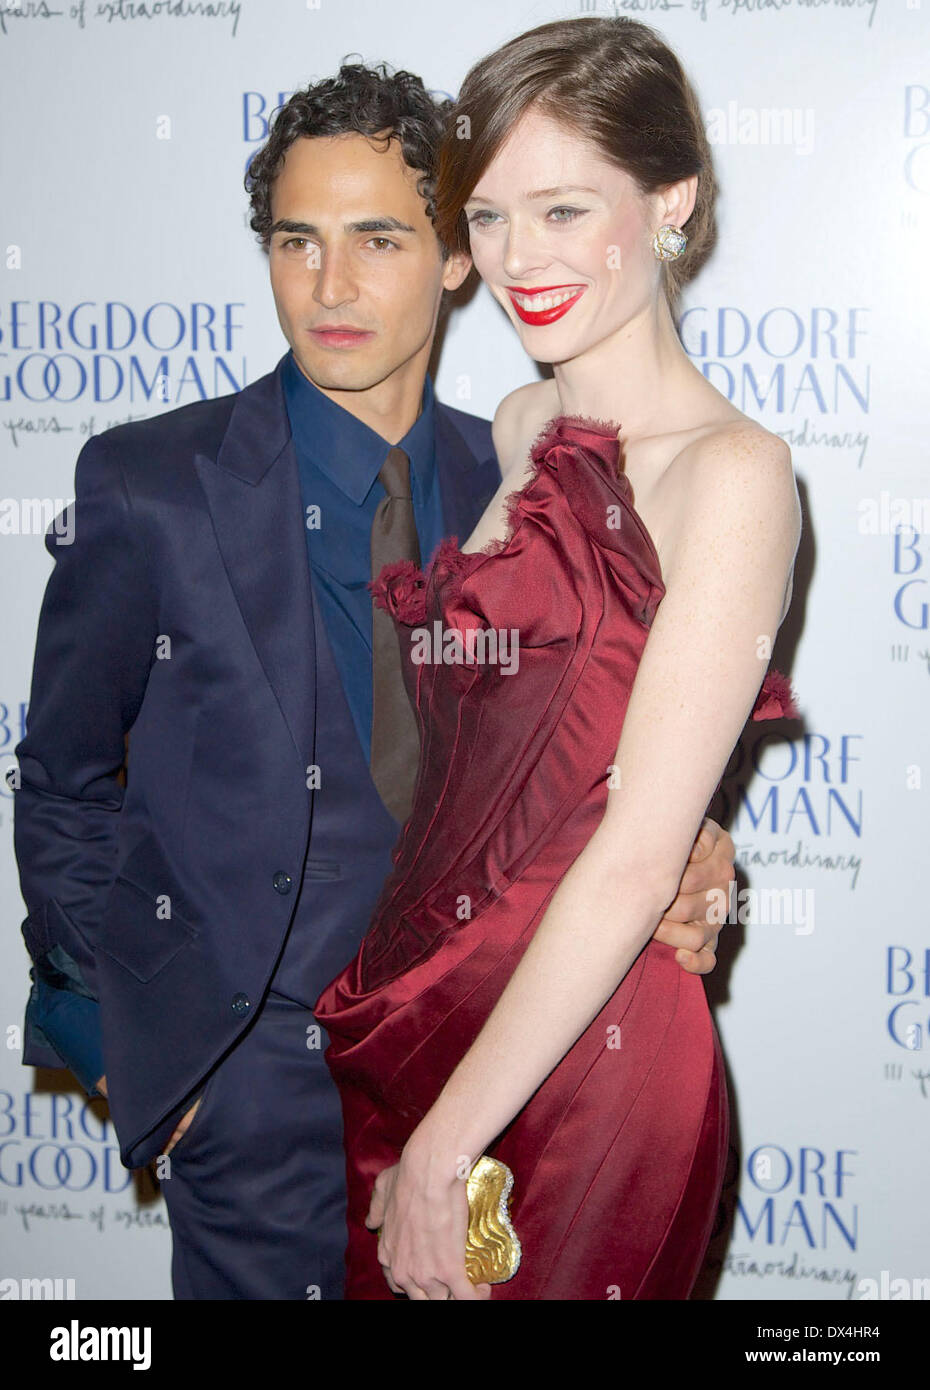 Zac Posen and Coco Rocha attends the Bergdorf Goodman 111th Anniversary ...